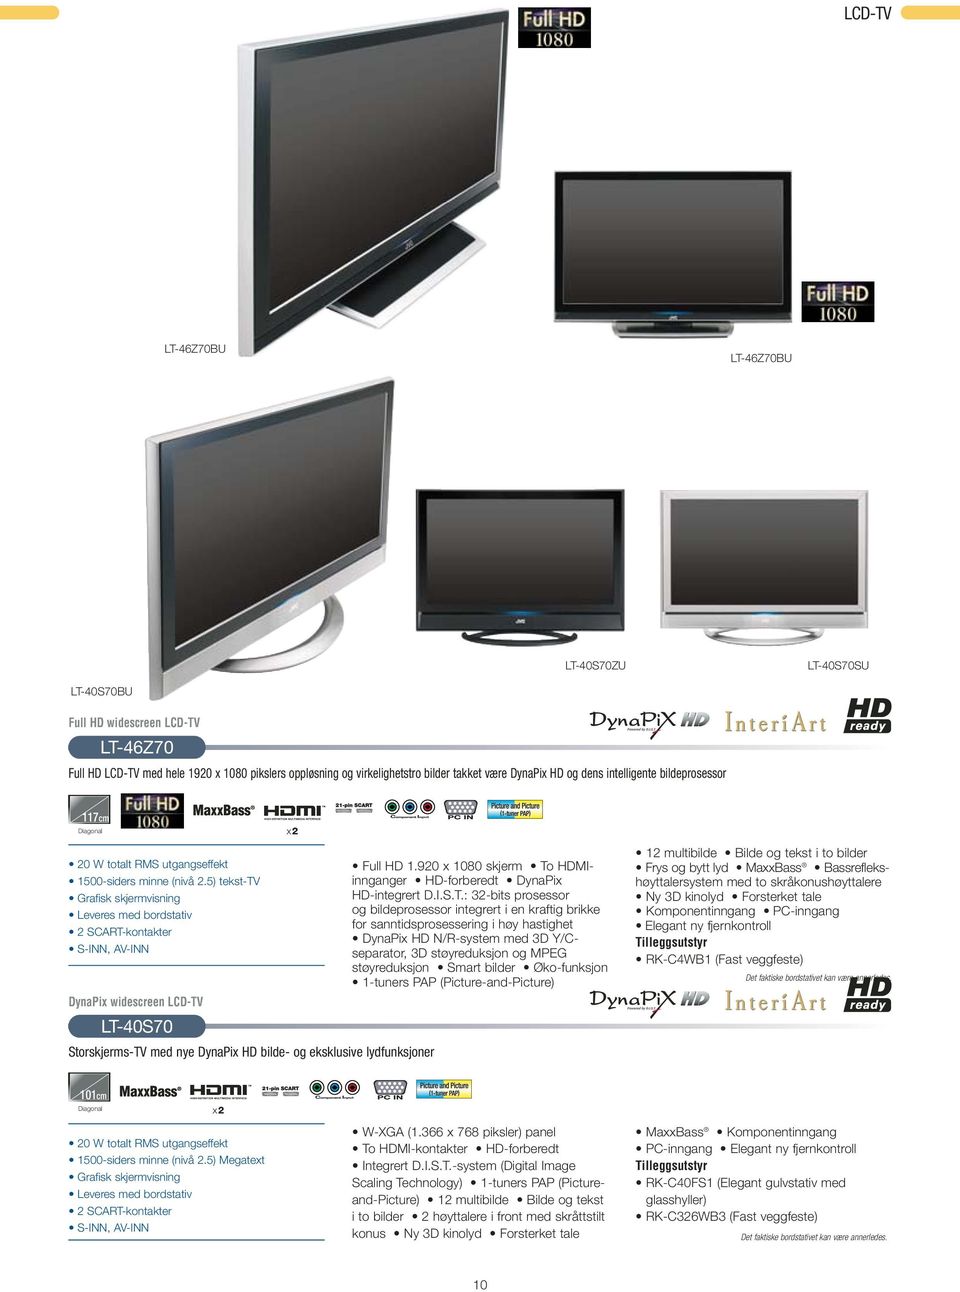 5) tekst-tv Grafisk skjermvisning Leveres med bordstativ 2 SCART-kontakter S-INN, AV-INN DynaPix widescreen LCD-TV LT-40S70 Storskjerms-TV med nye DynaPix HD bilde- og eksklusive lydfunksjoner x2